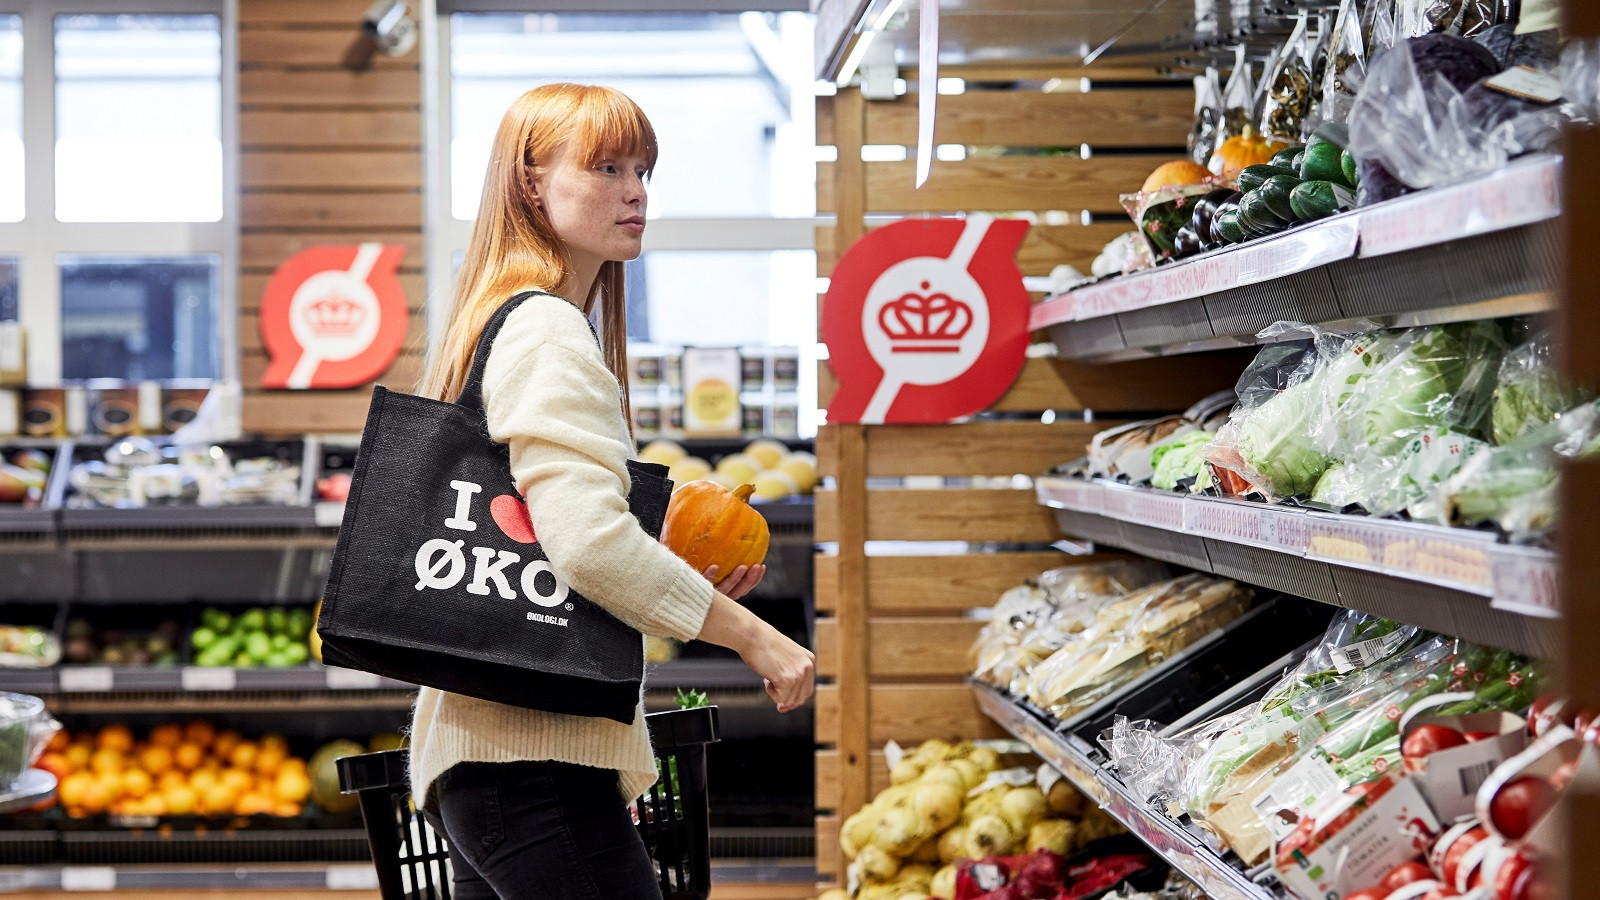 Ung kvinde køber ind i grøntafdeling i supermarked